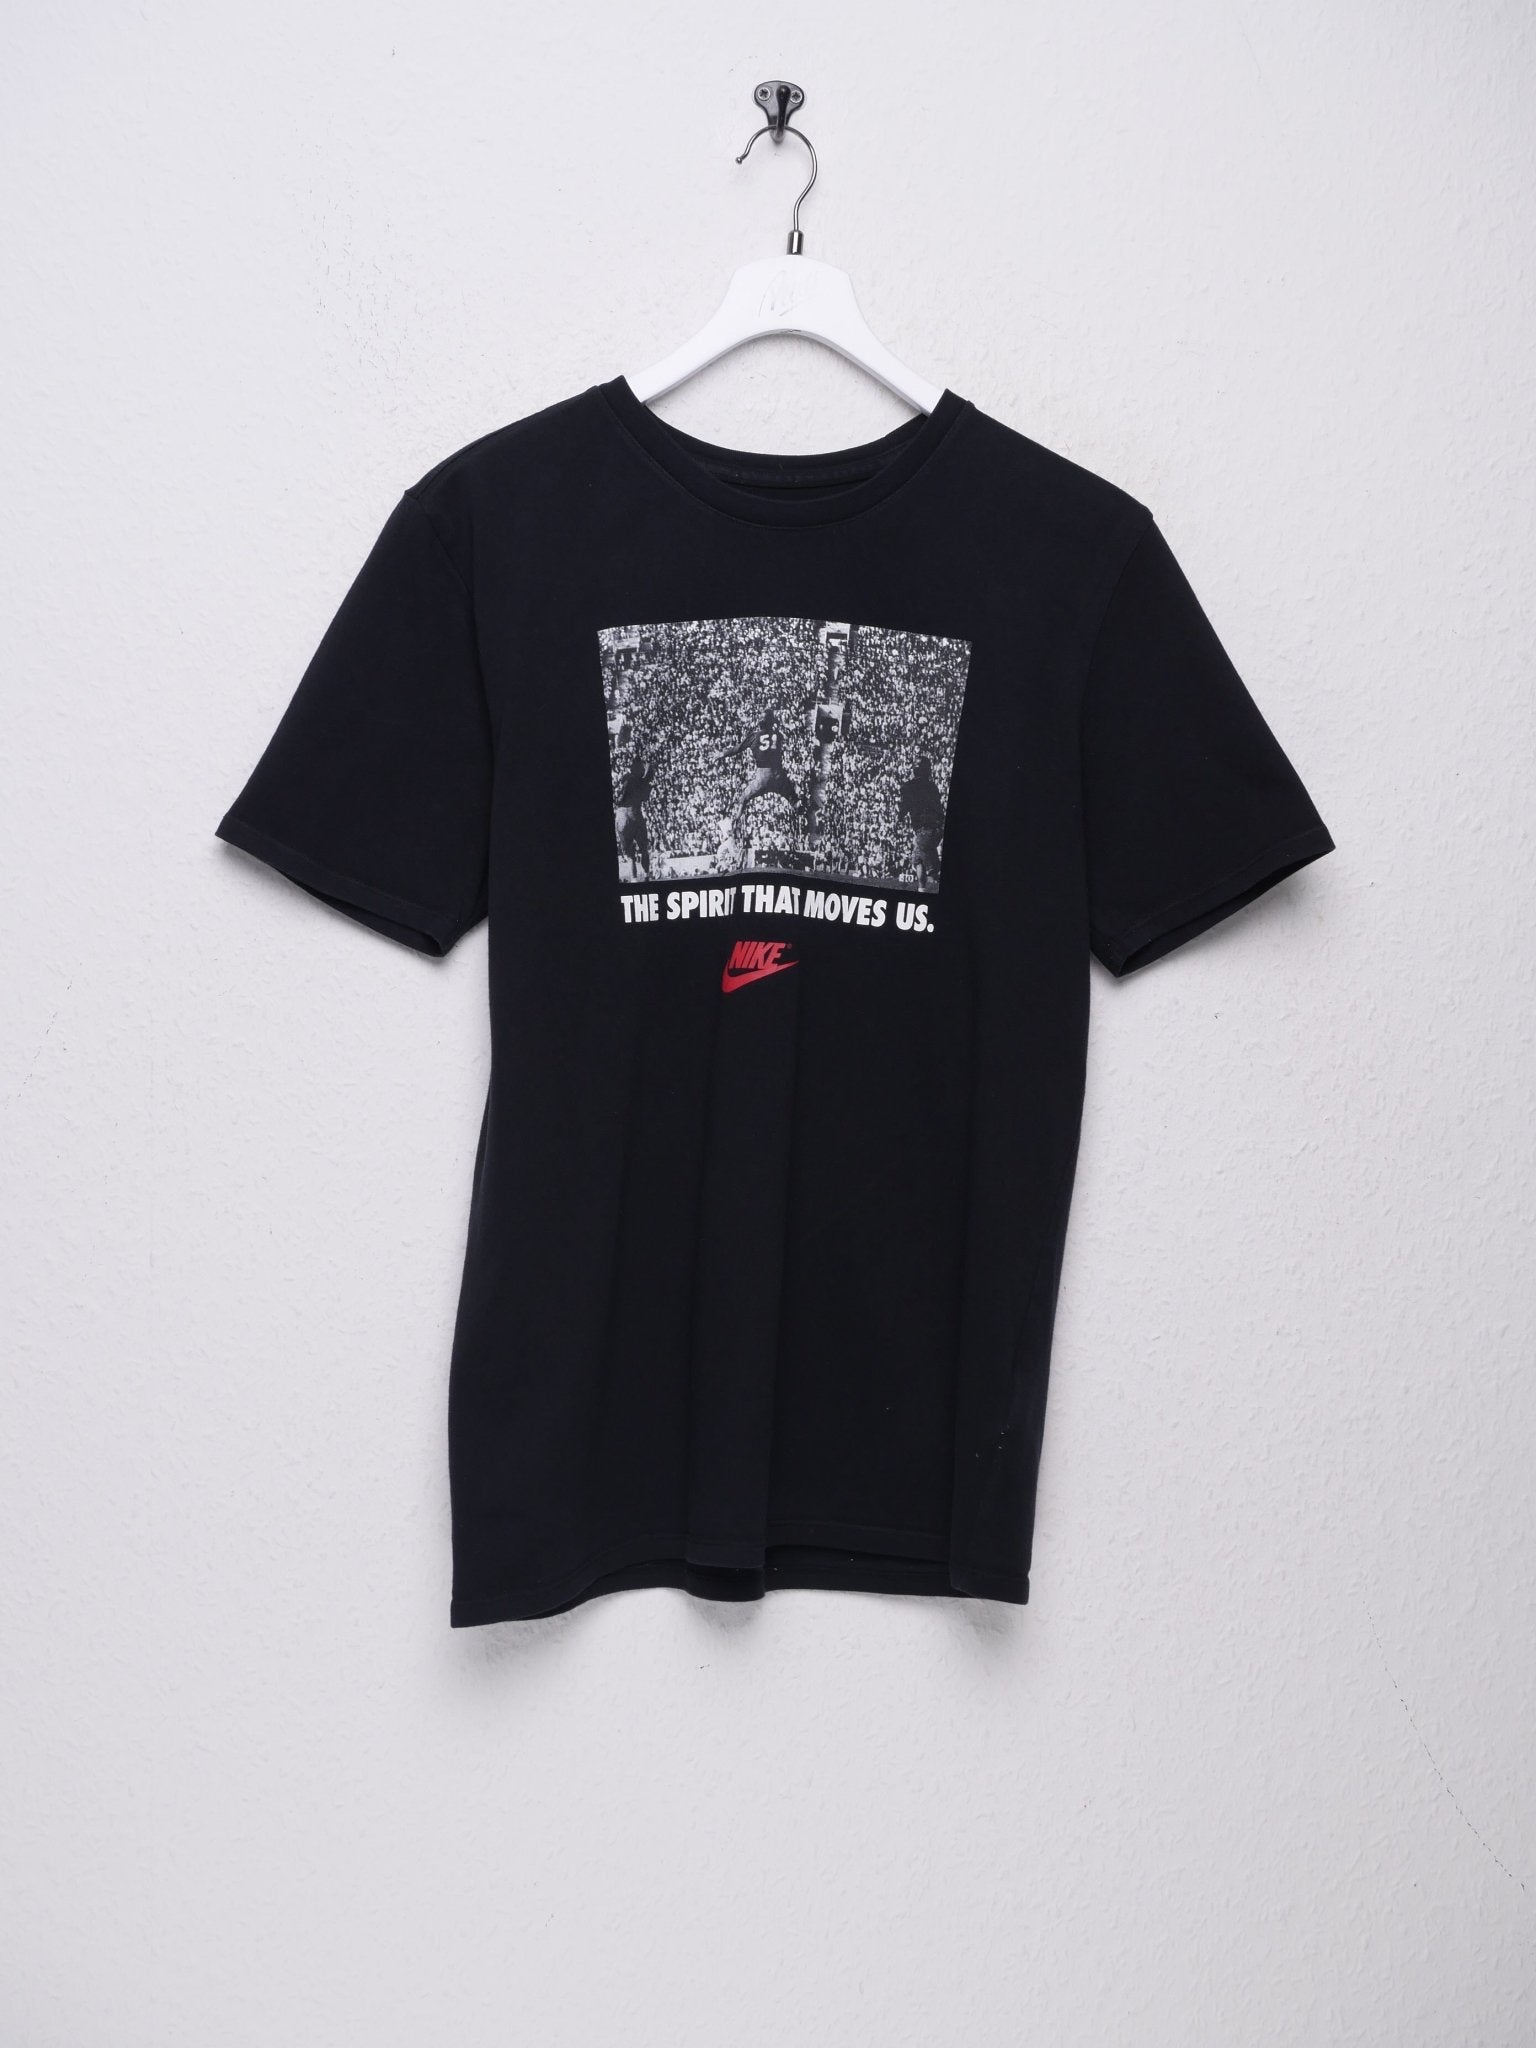 Nike printed Logo black pictured Shirt - Peeces